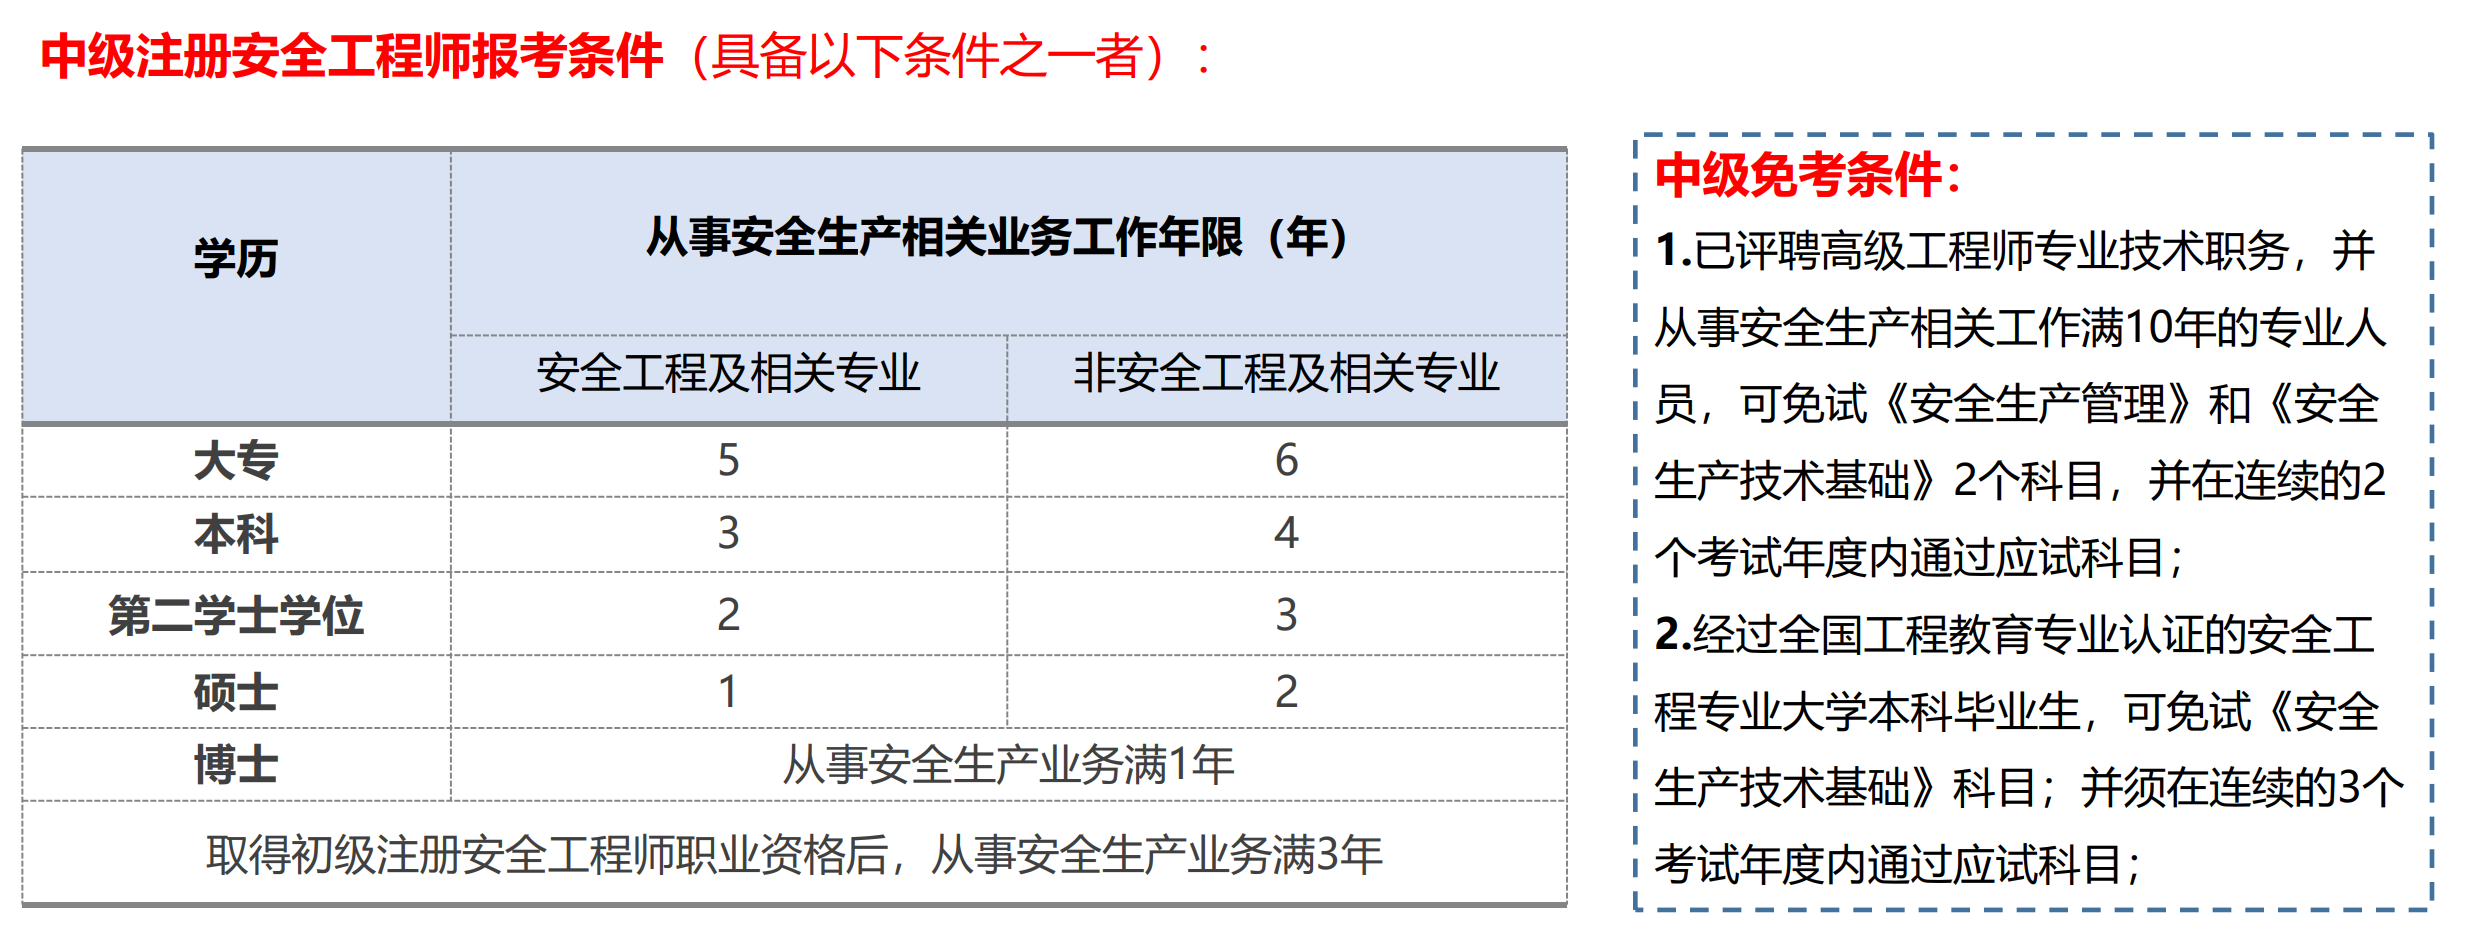 桂林注册安全工程师培训课程